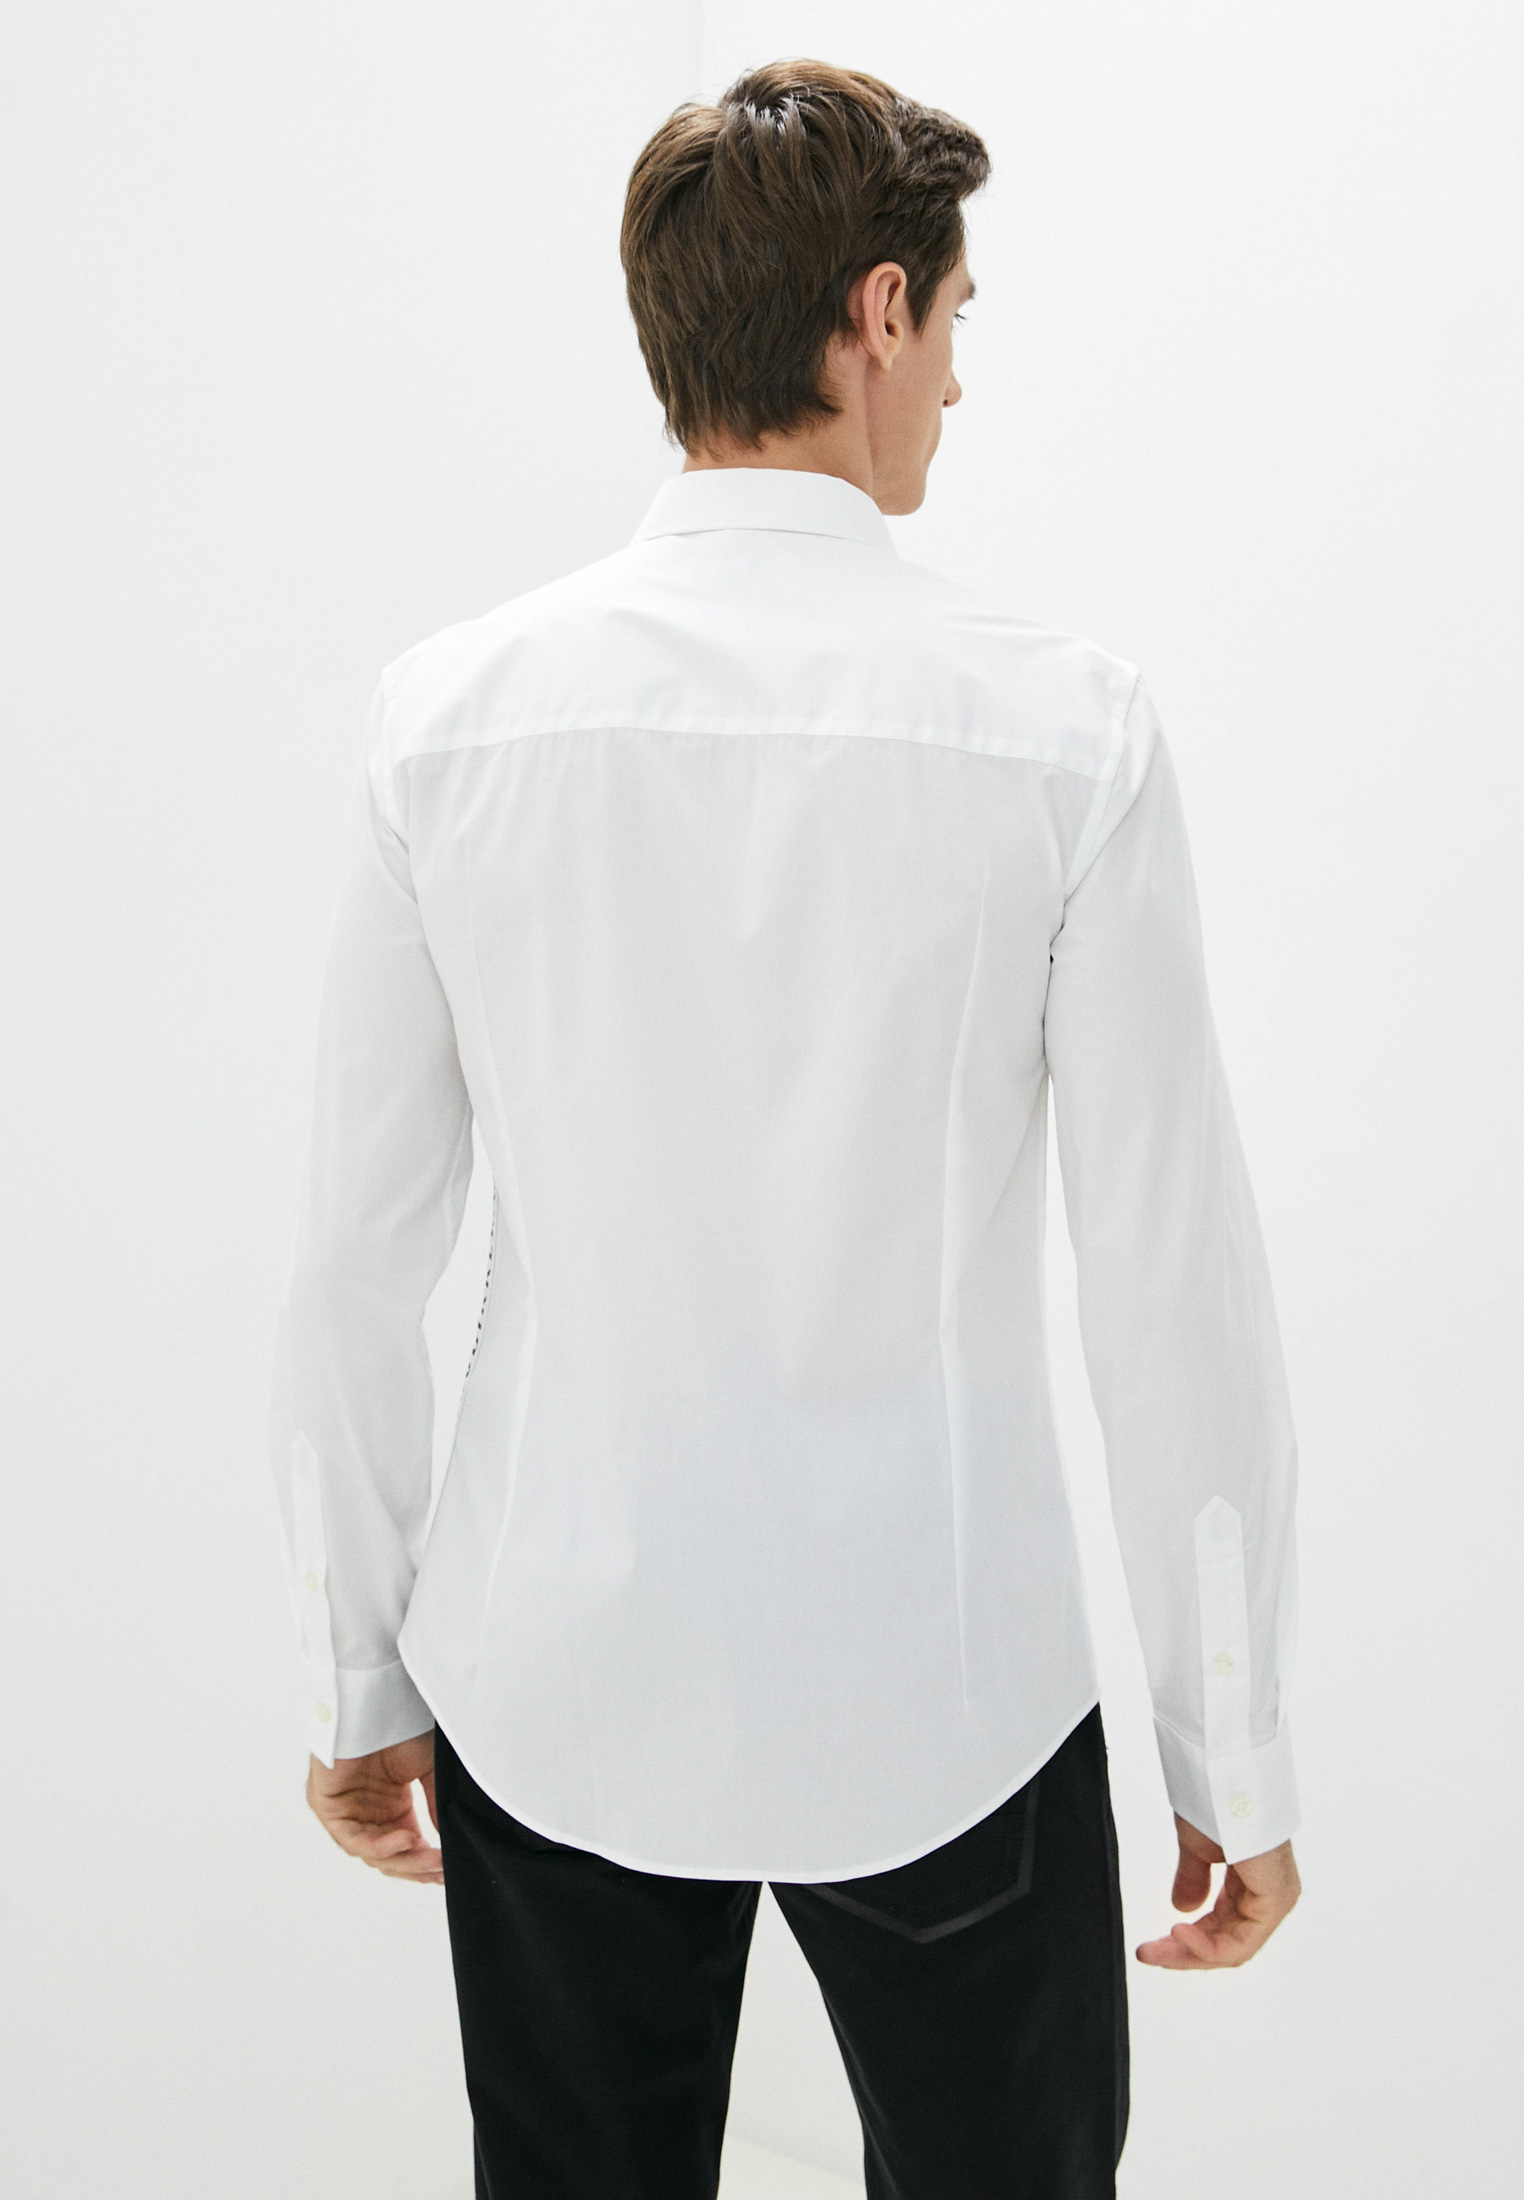 Рубашка с длинным рукавом Bikkembergs (Биккембергс) C C 055 81 S 2931: изображение 4